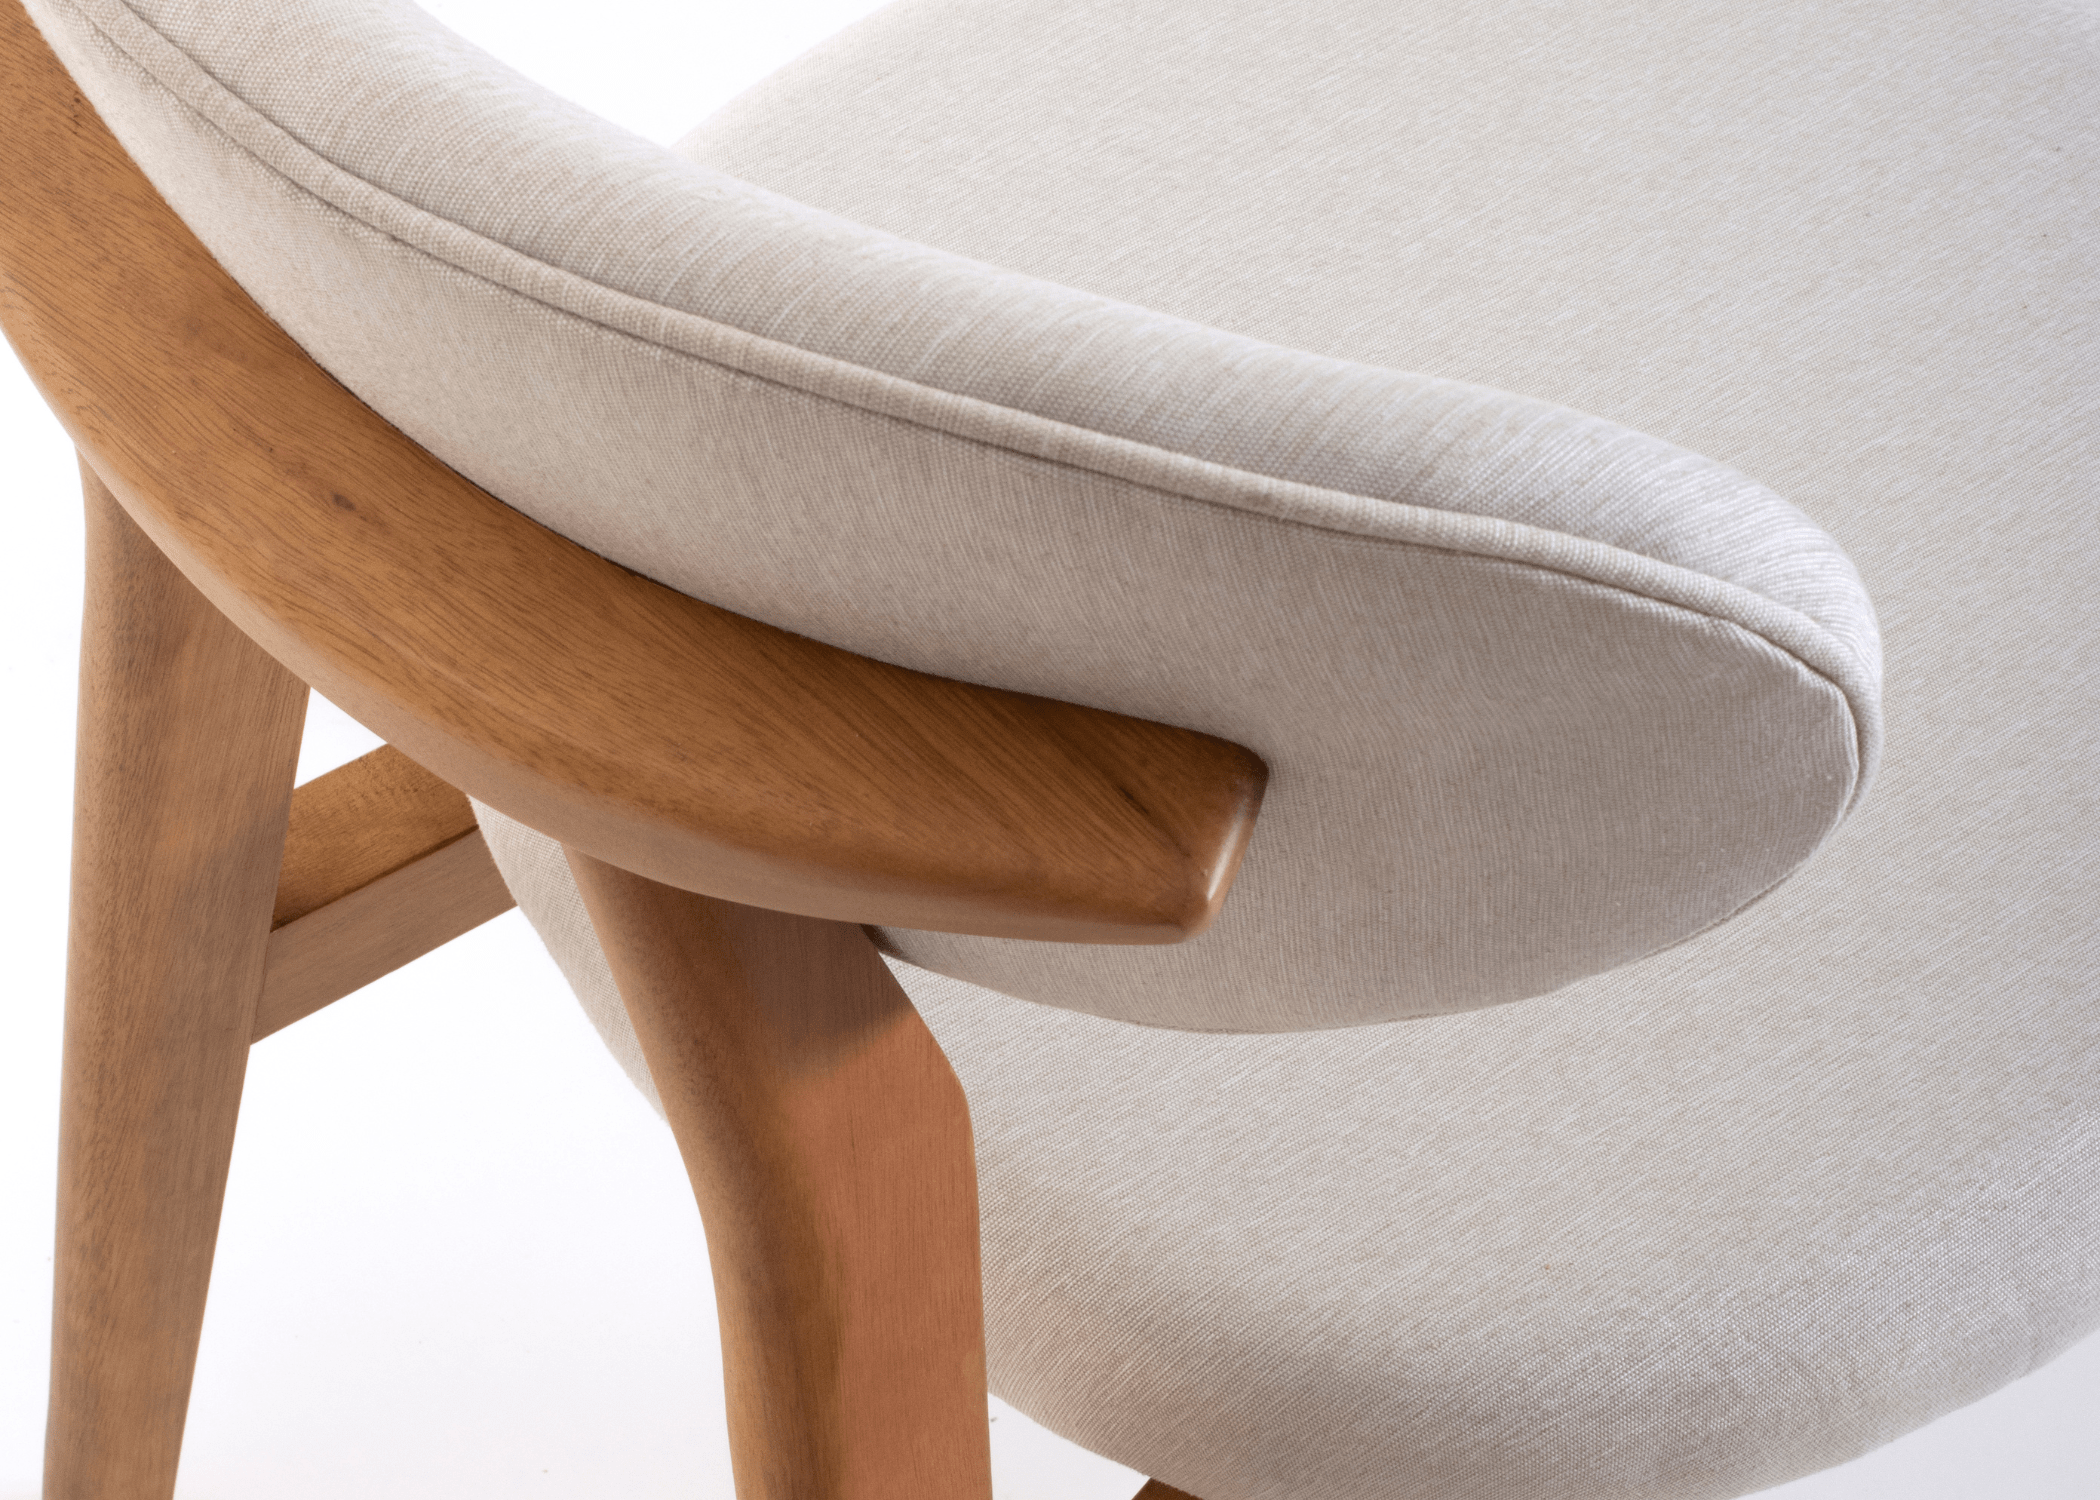 Cadeira Dunas: design contemporâneo e conforto ergonômico em uma única peça.